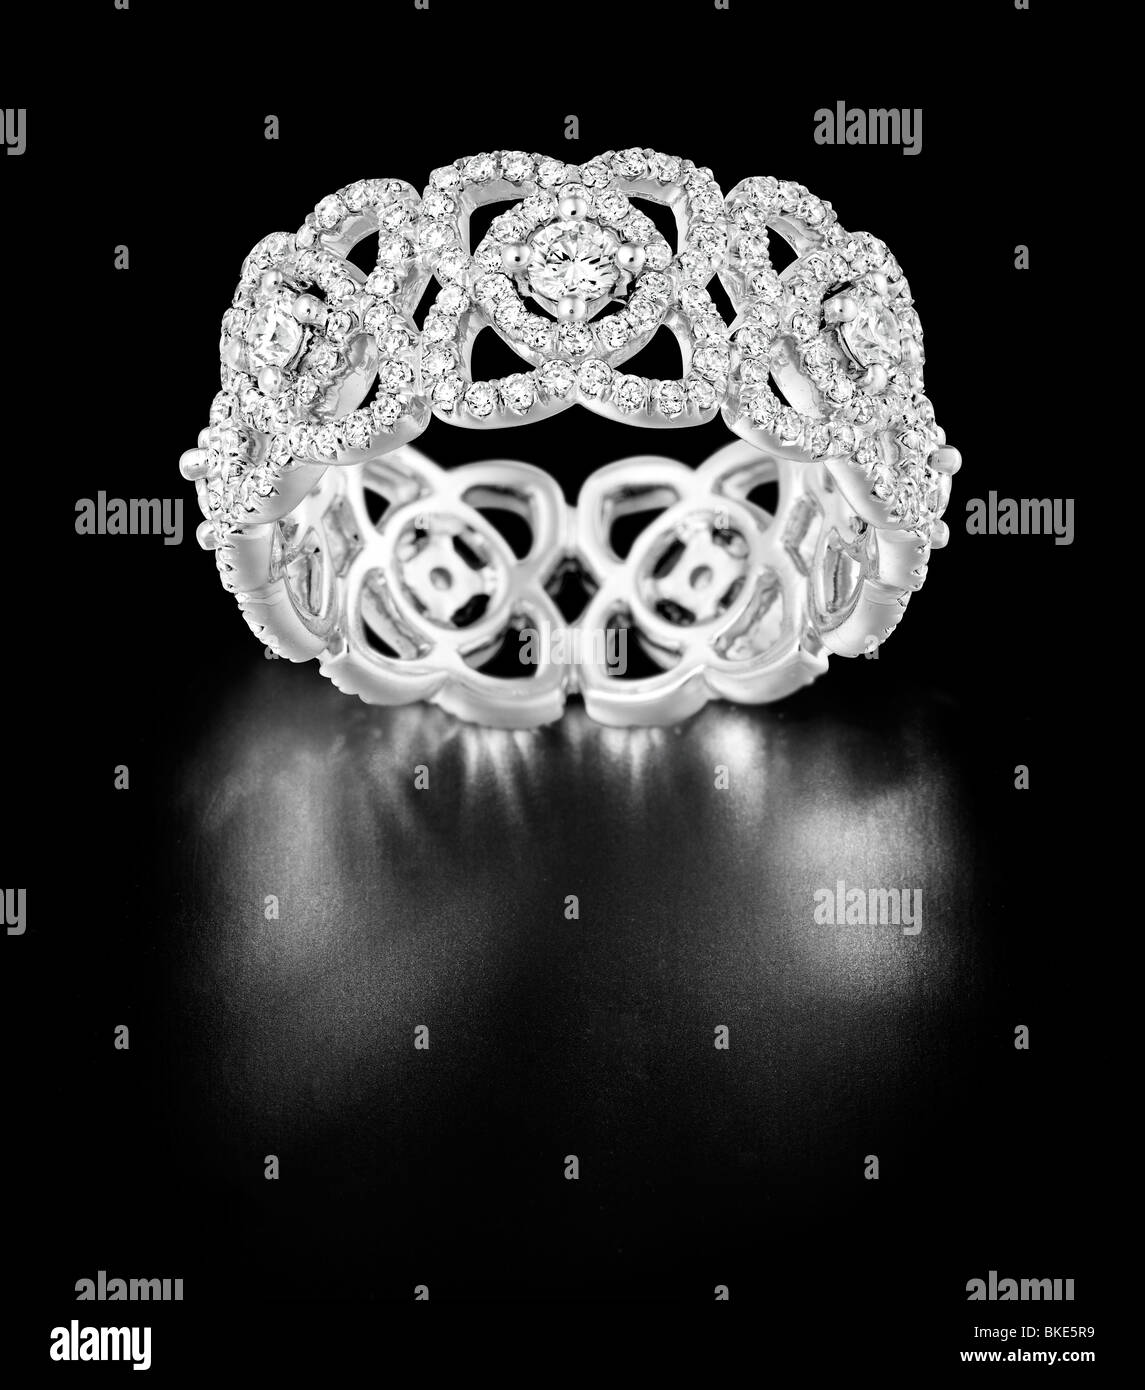 Flower design diamond white gold ring Stock Photo